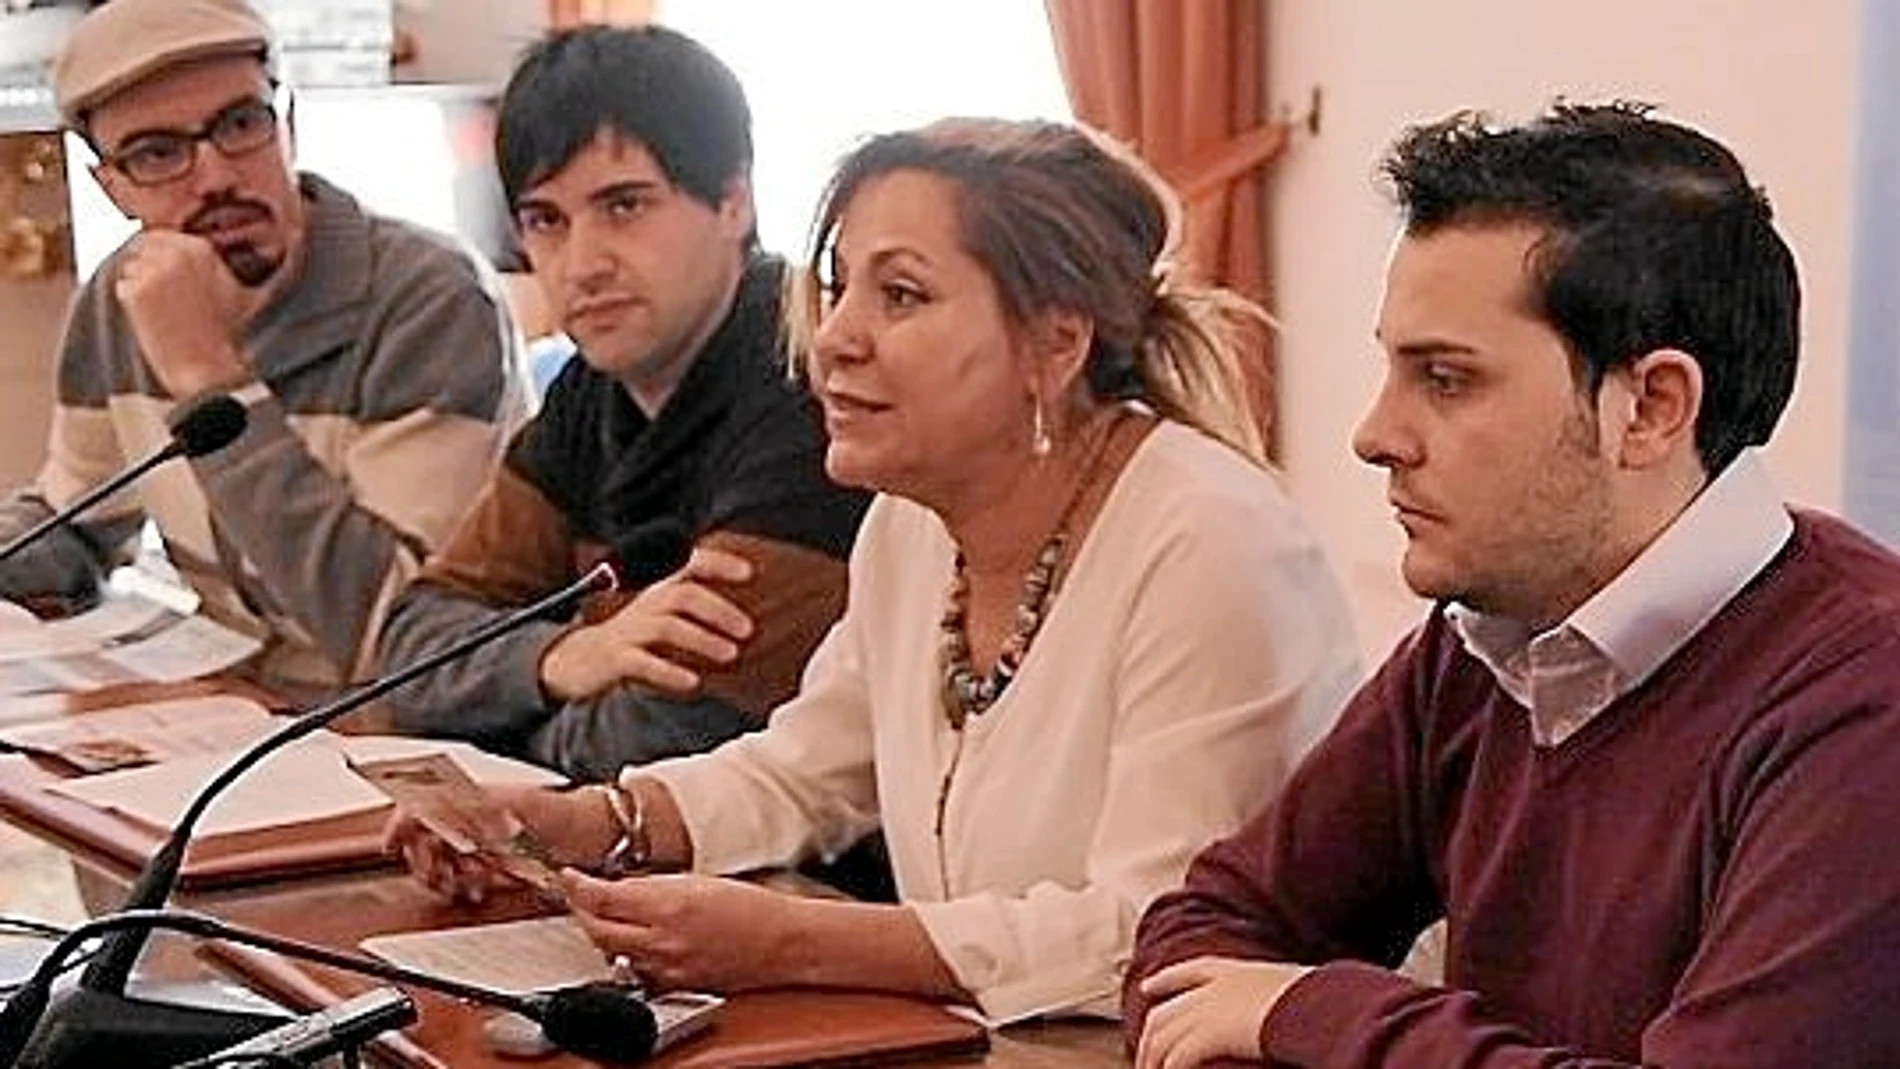 La alcaldesa de Zamora, Rosa Valdeón, presenta la programación de «Otoño 2013»